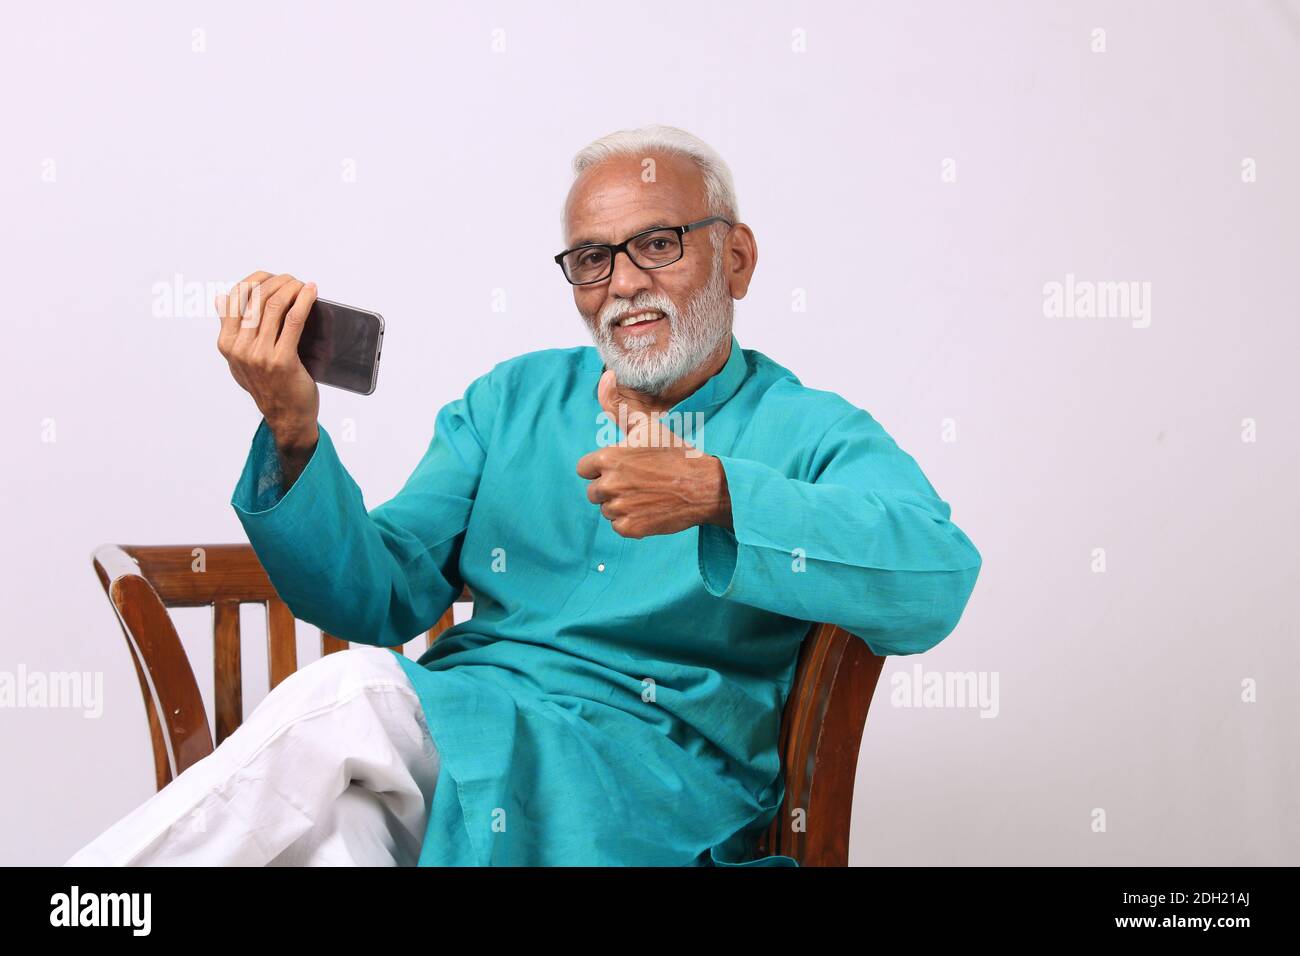 Vieil homme indien à barbe cool utilisant un téléphone portable Banque D'Images